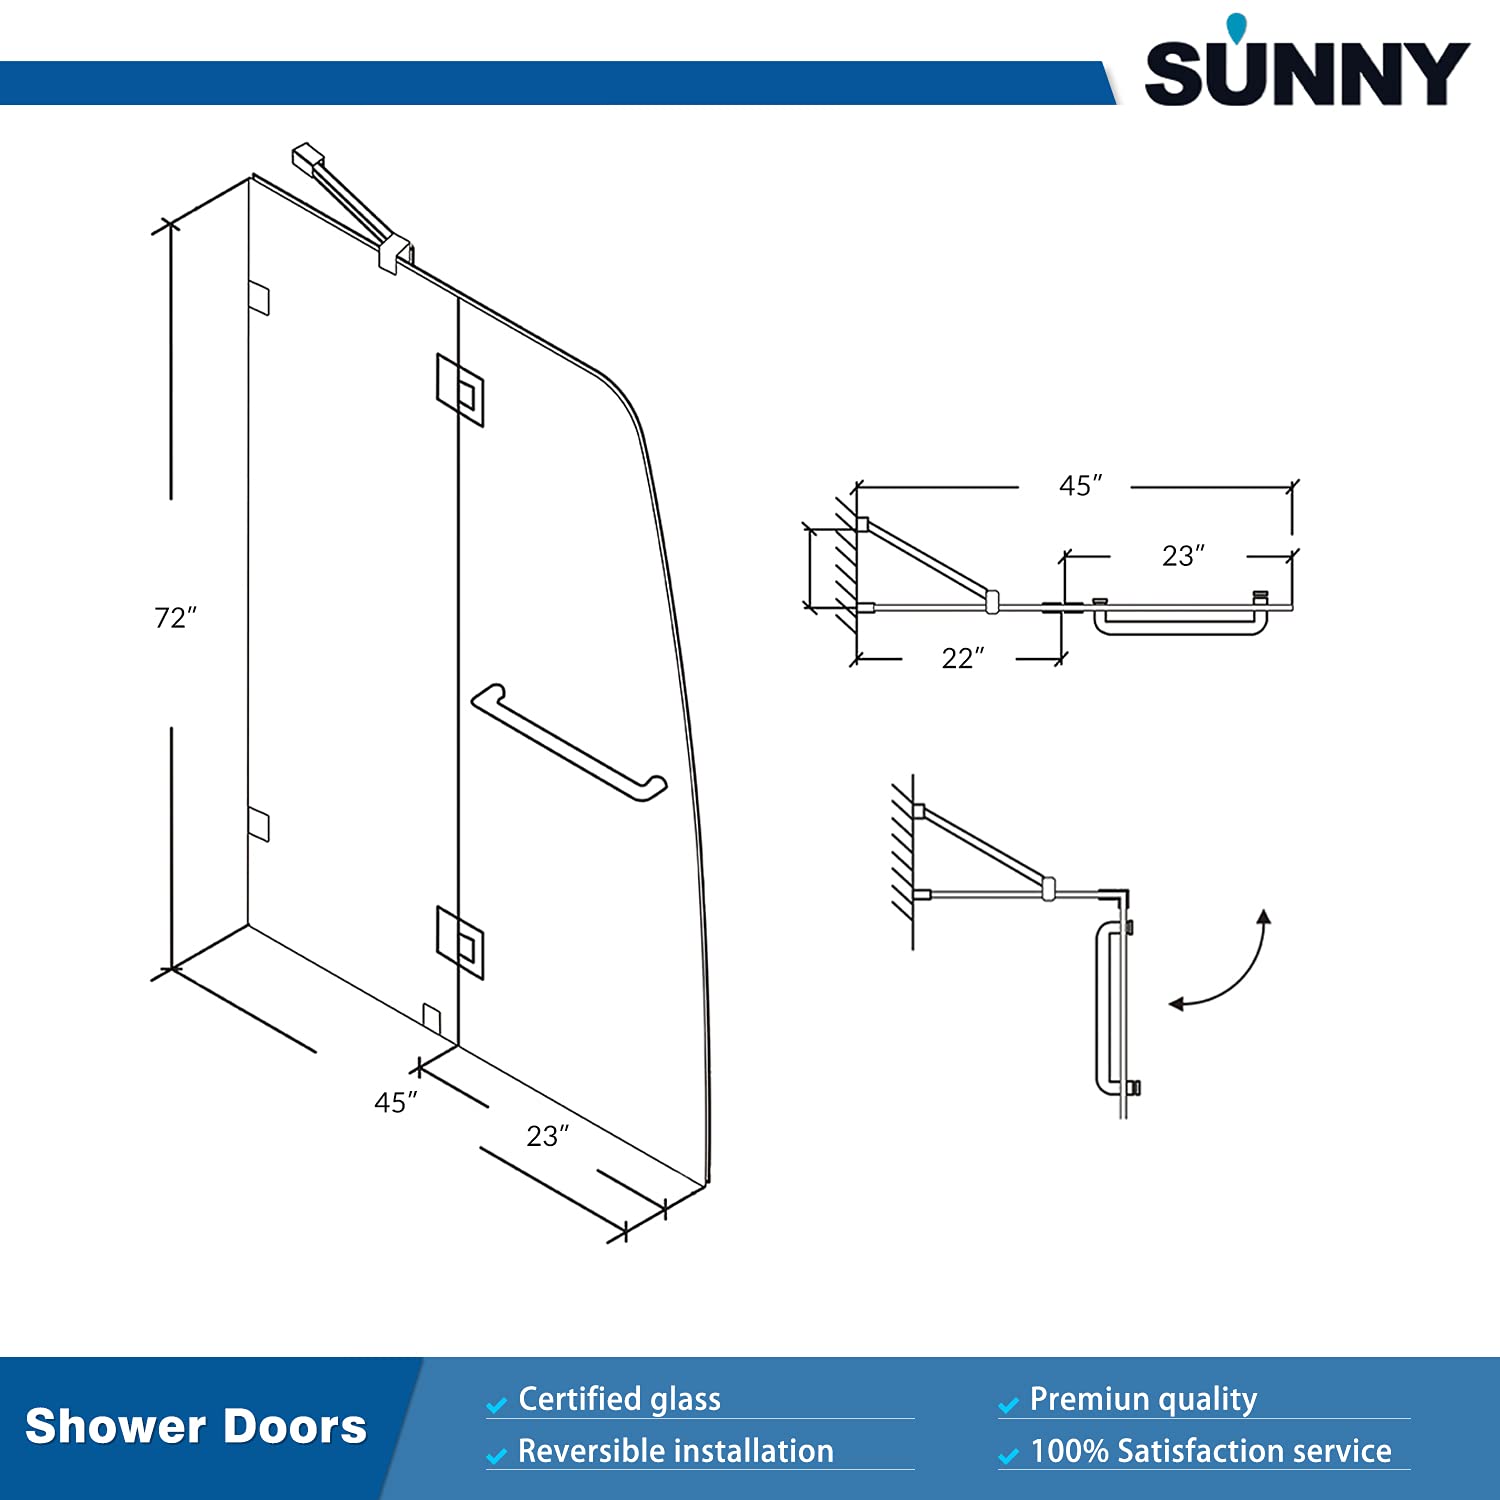 SUNNY SHOWER 45 in. W x 72 in. H Frameless Chrome Finish Pivot Shower Door Size Chart